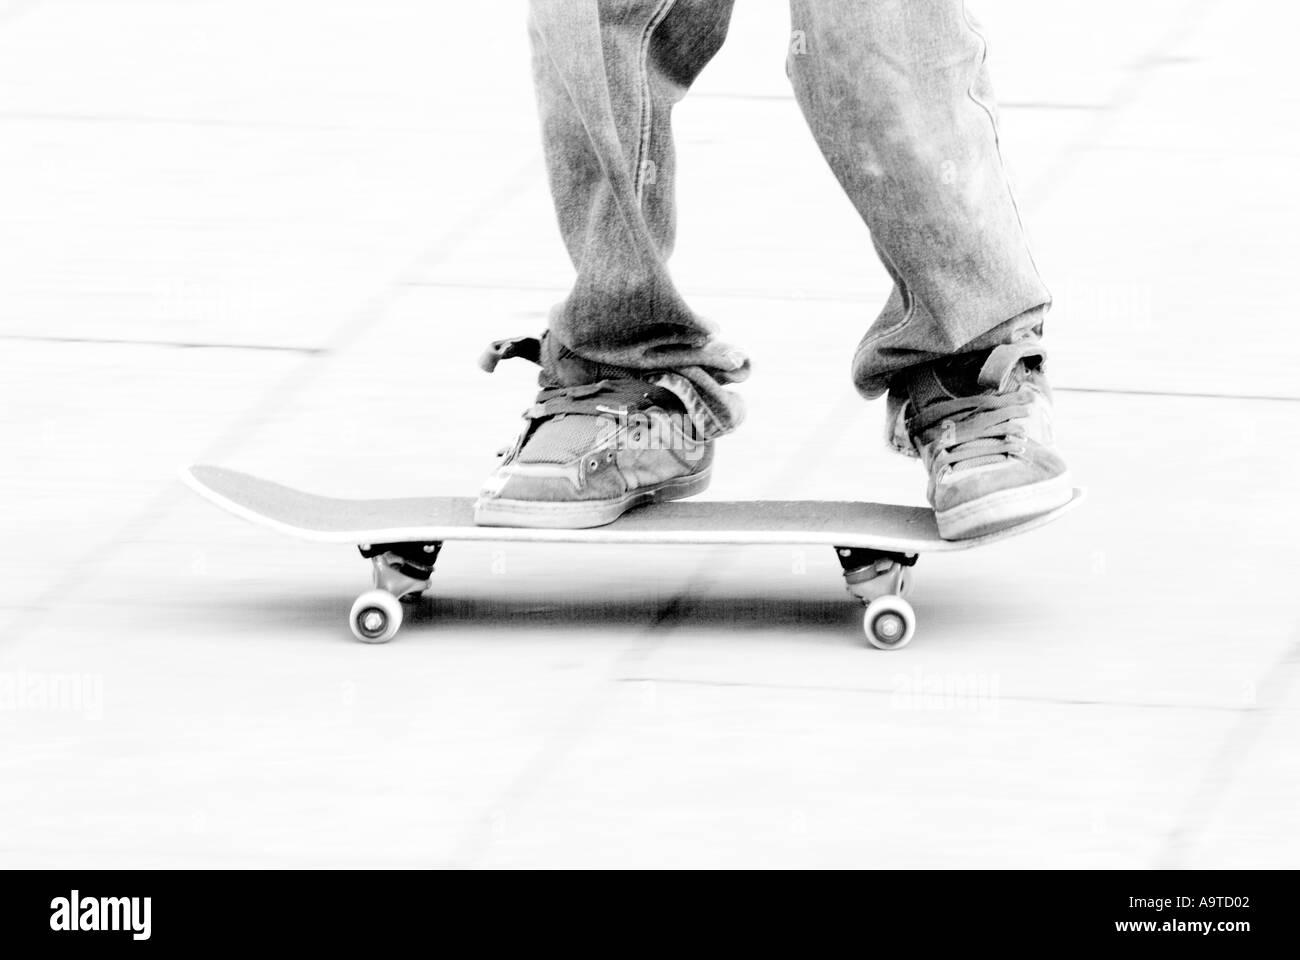 Skate Board skateboard skateboard culture jeunesse sport extrême danger radical voyage roll jackass grind dommage street free styl Banque D'Images